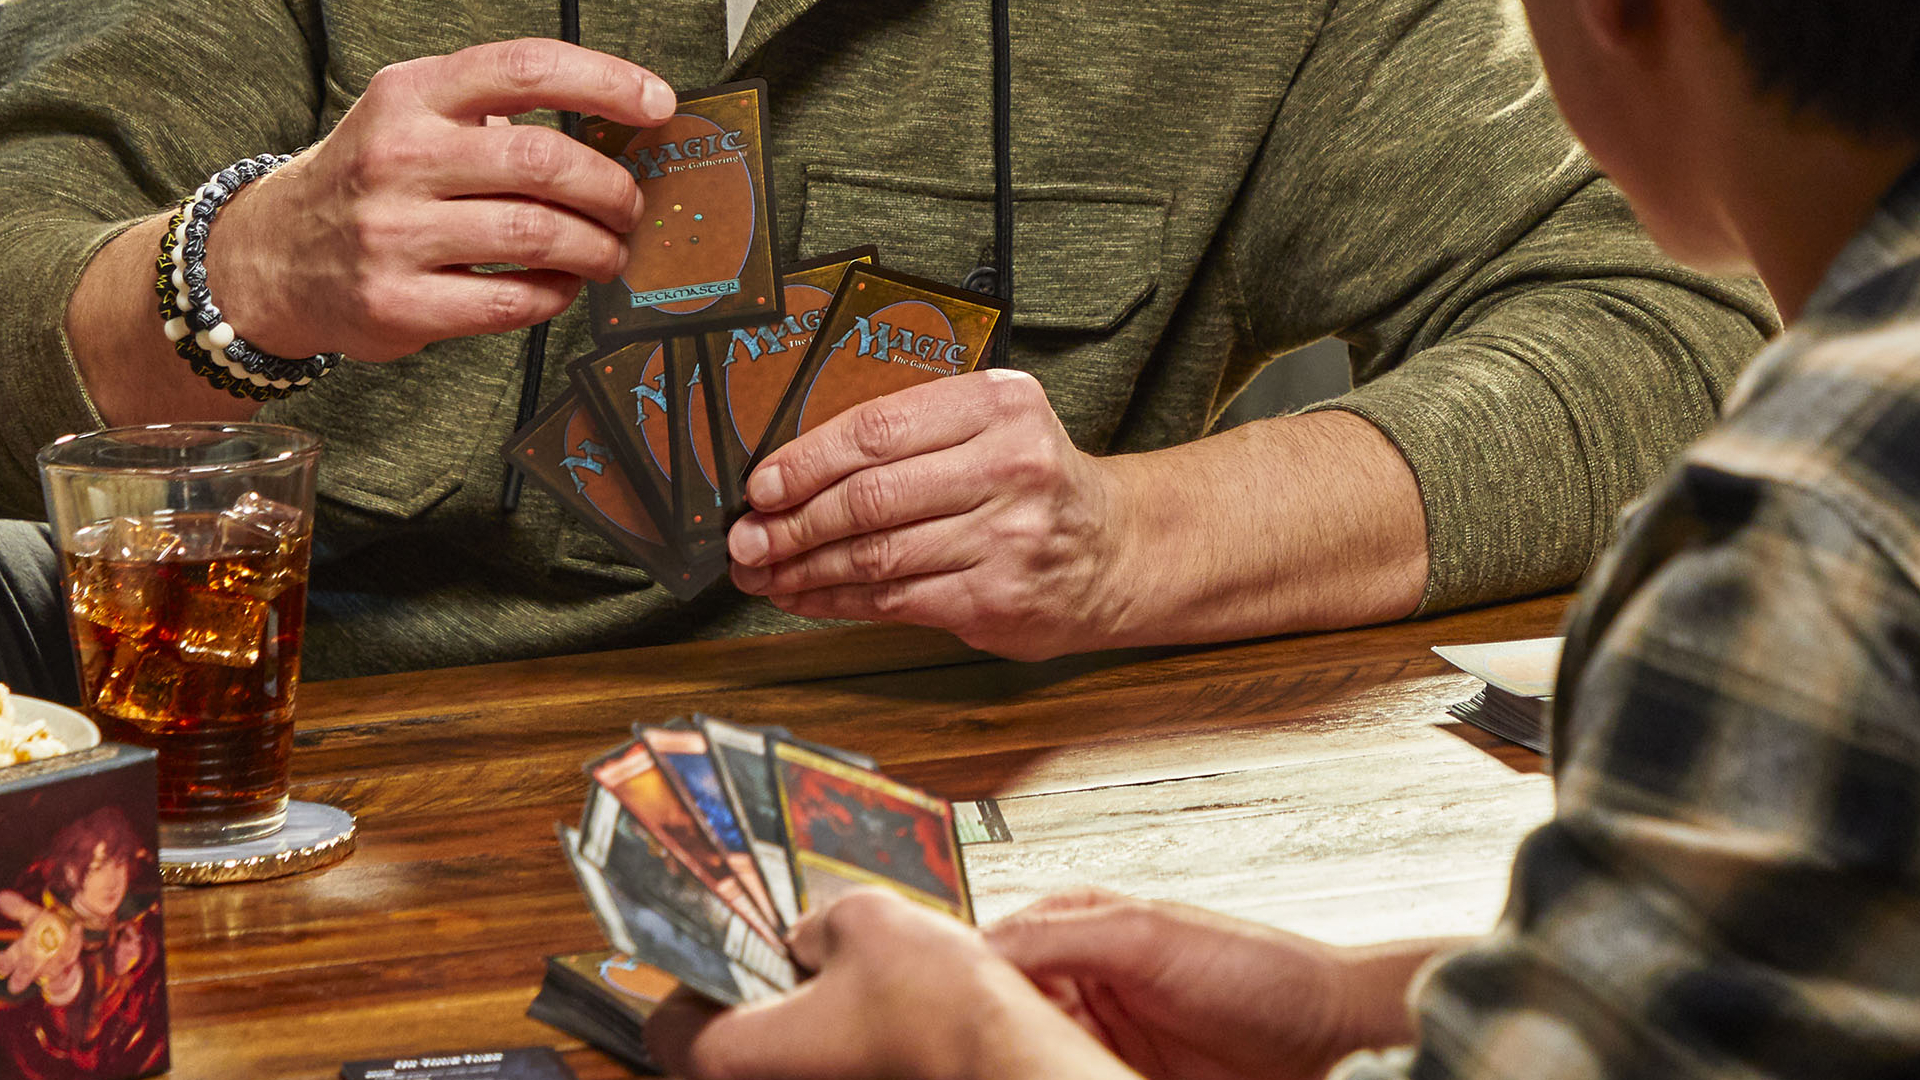 Duas pessoas seguram cartas de Magic: The Gathering, sentadas em frente uma da outra numa mesa